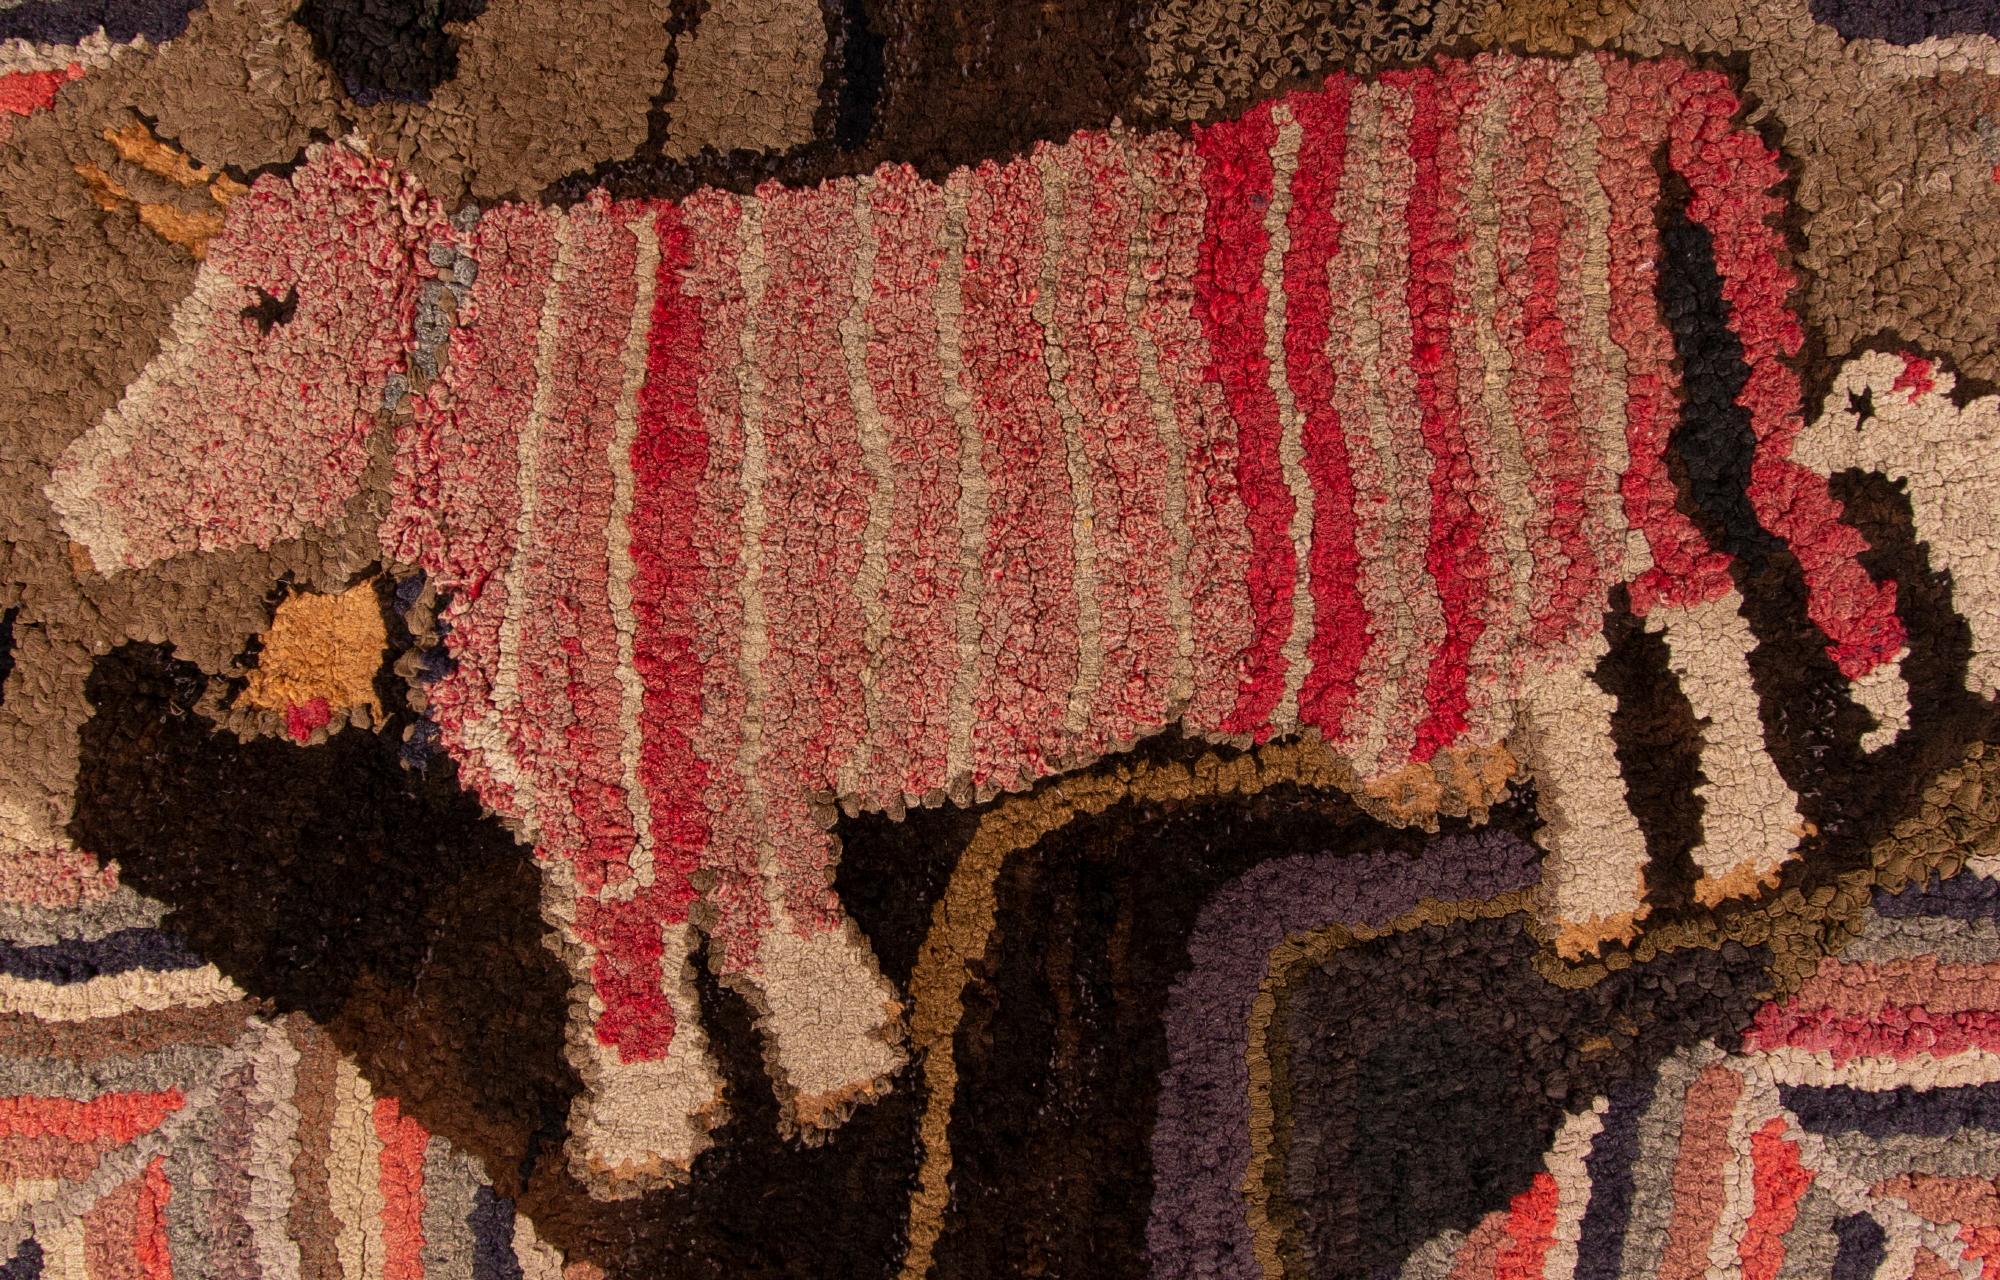 Tapis crocheté fantaisiste avec une vache à rayures roses et un petit chien blanc, vers 1885-1910

Tapis à capuche avec une vache rayée rose, portant une grande cloche de vache, suivie d'un petit chien blanc. Avec un excellent style populaire, ils